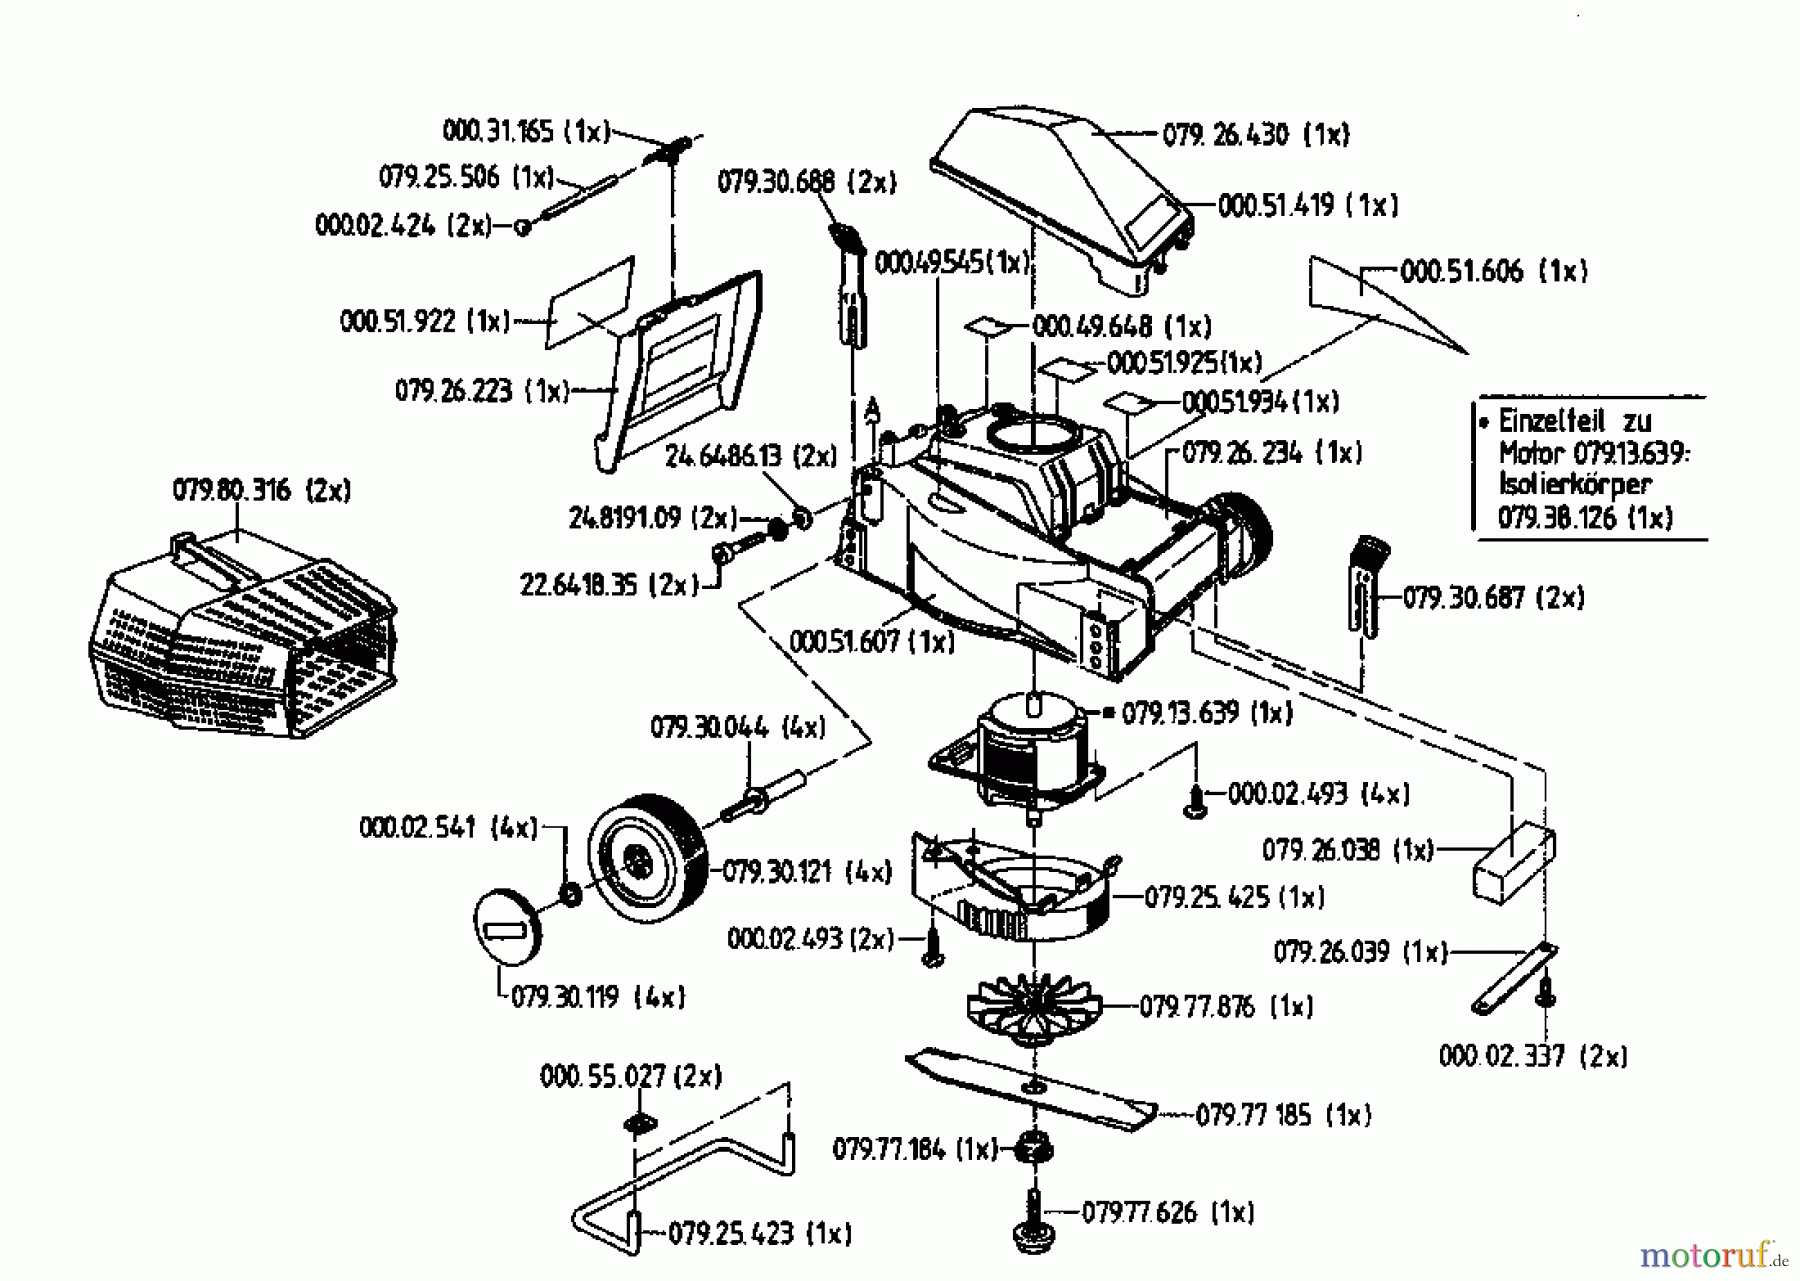  Gutbrod Tondeuse électrique HE 32-1000 04027.03  (1995) Machine de base